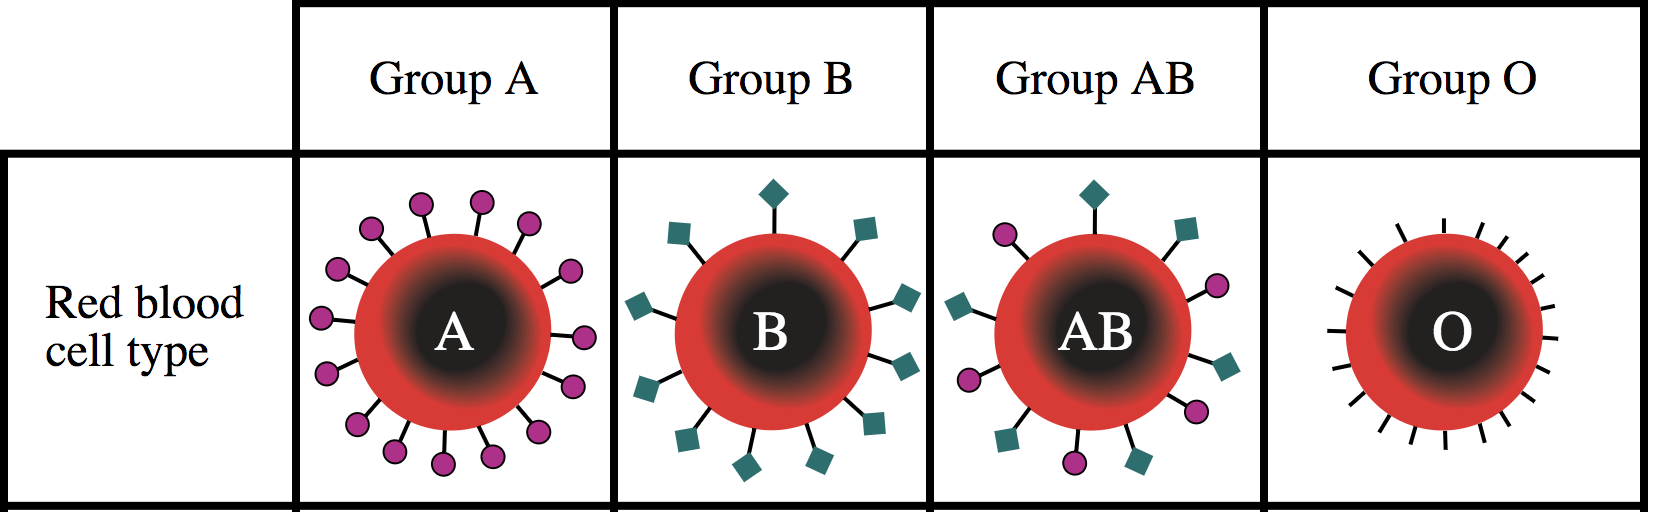 Diagrama de grupos sanguíneos ABO: A con antígenos circulares, B con antígenos cuadrados, AB con antígenos circulares y cuadrados, O sin antígenos